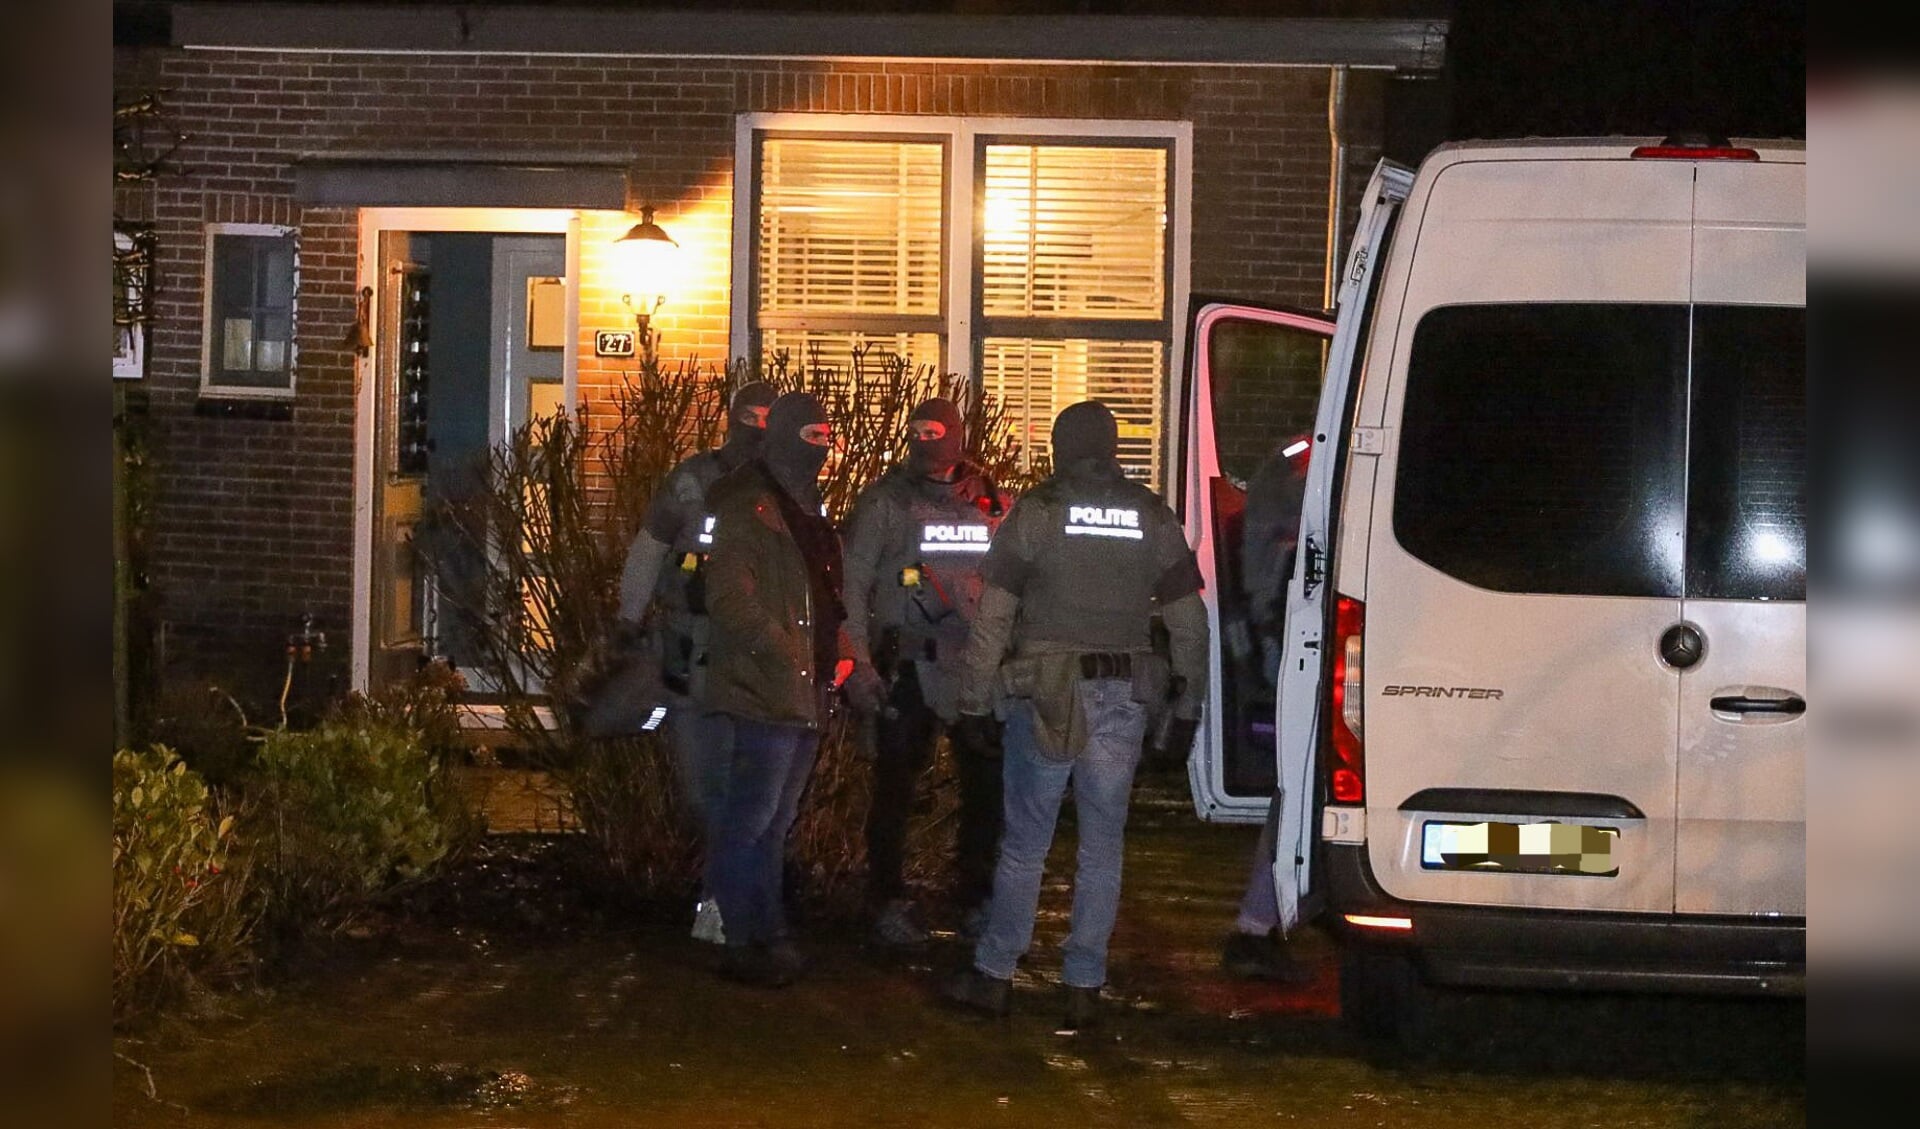 De Dienst Speciale Interventies (DSI) van de politie deed op die bewuste 4 januari rond zes uur in de avond een inval in de woning waar de man uit Naarden op dat moment verbleef.